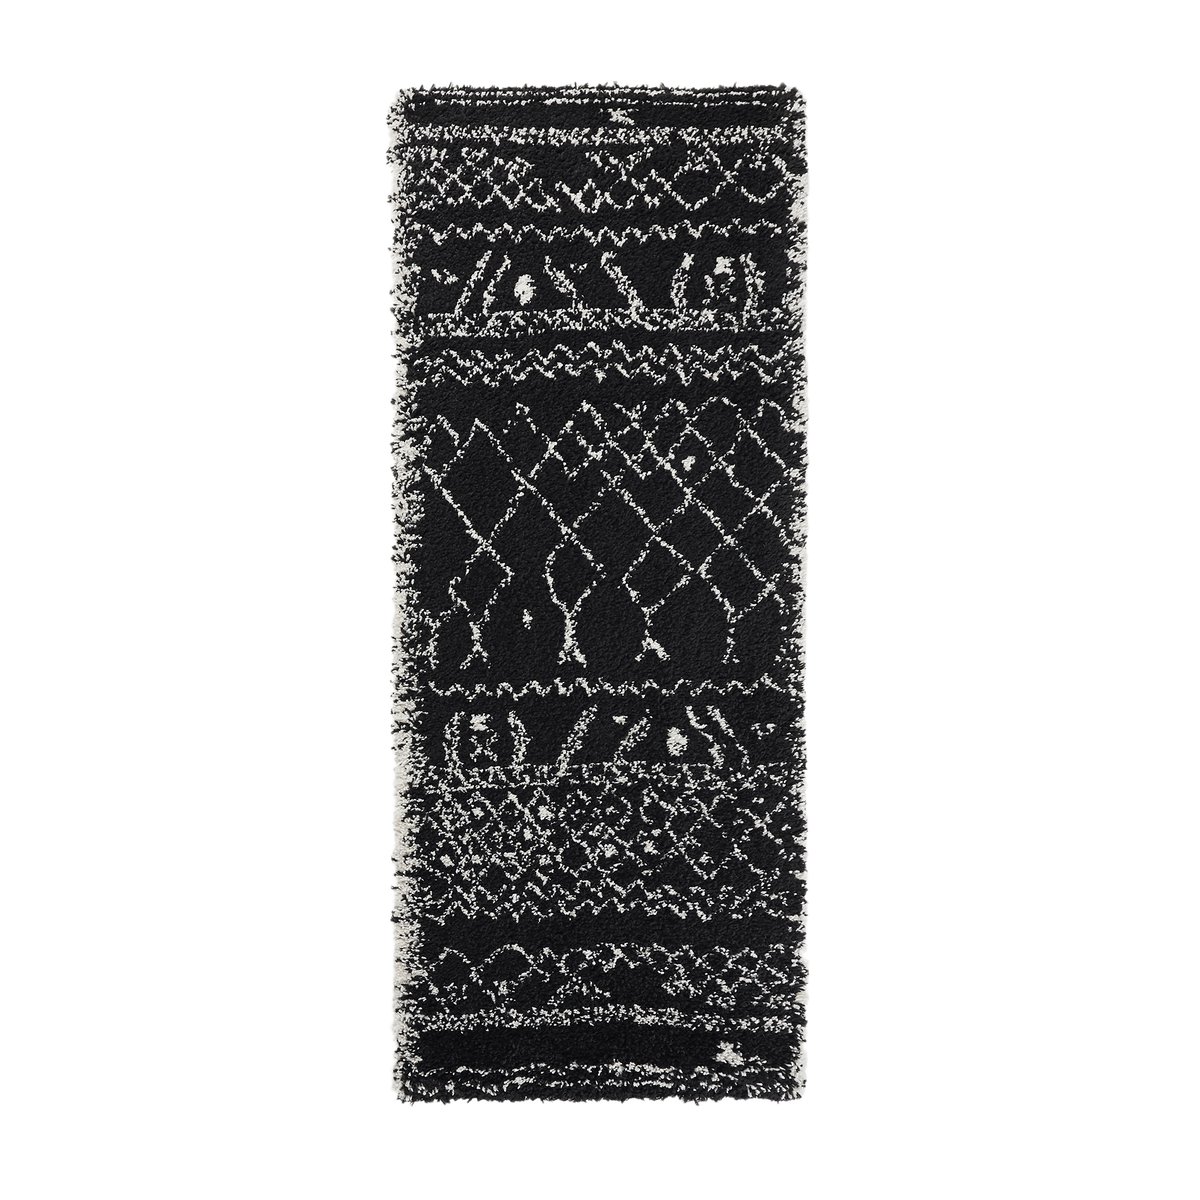 Ковер La Redoute Для коридора в берберском стиле Afaw 80 x 200 см черный, размер 80 x 200 см - фото 1